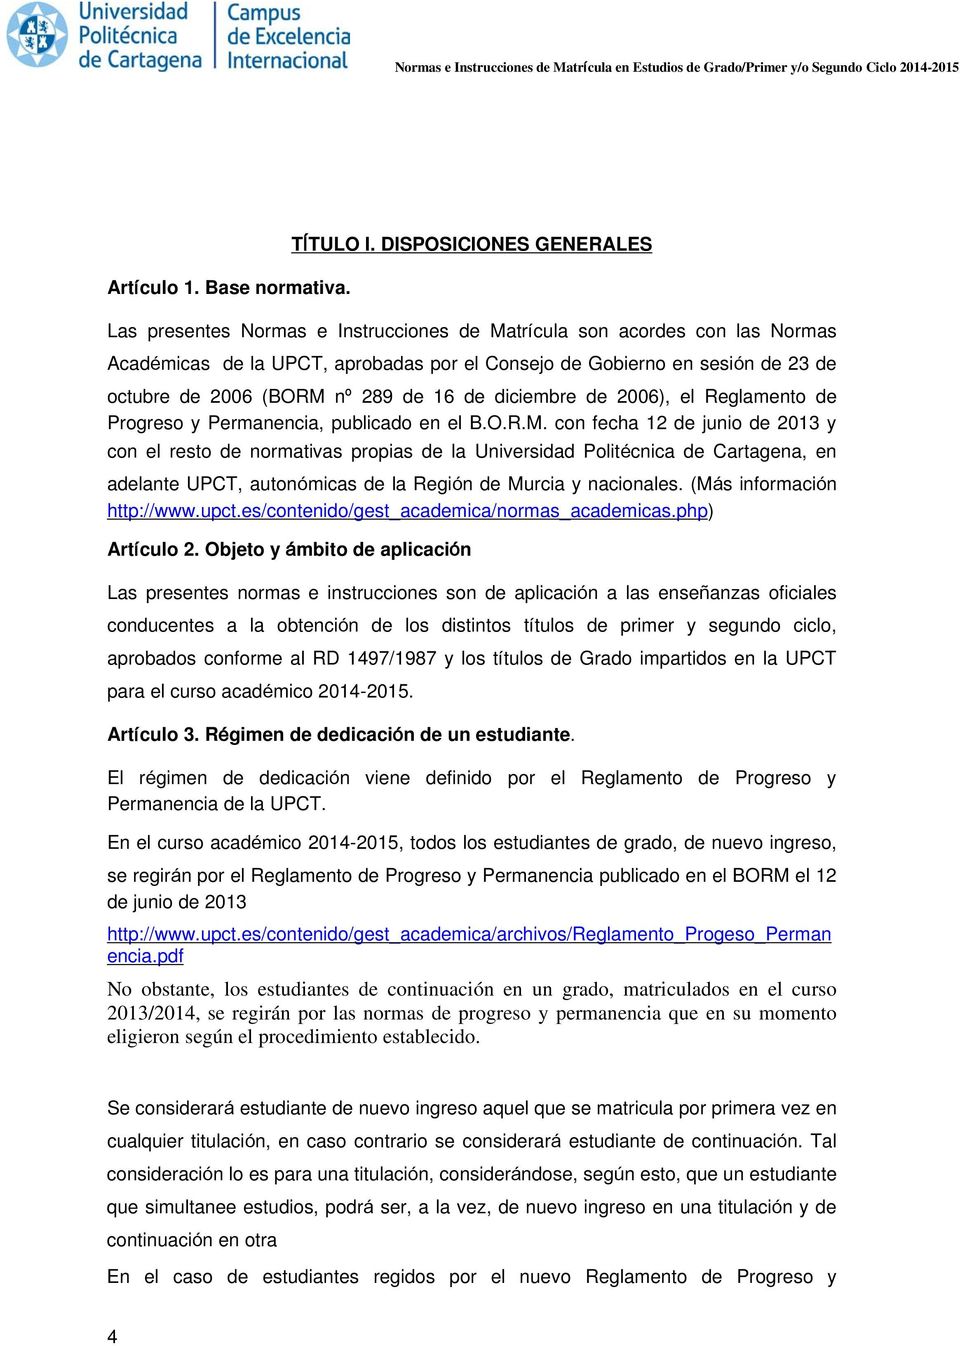 (BORM nº 289 de 16 de diciembre de 2006), el Reglamento de Progreso y Permanencia, publicado en el B.O.R.M. con fecha 12 de junio de 2013 y con el resto de normativas propias de la Universidad Politécnica de Cartagena, en adelante UPCT, autonómicas de la Región de Murcia y nacionales.